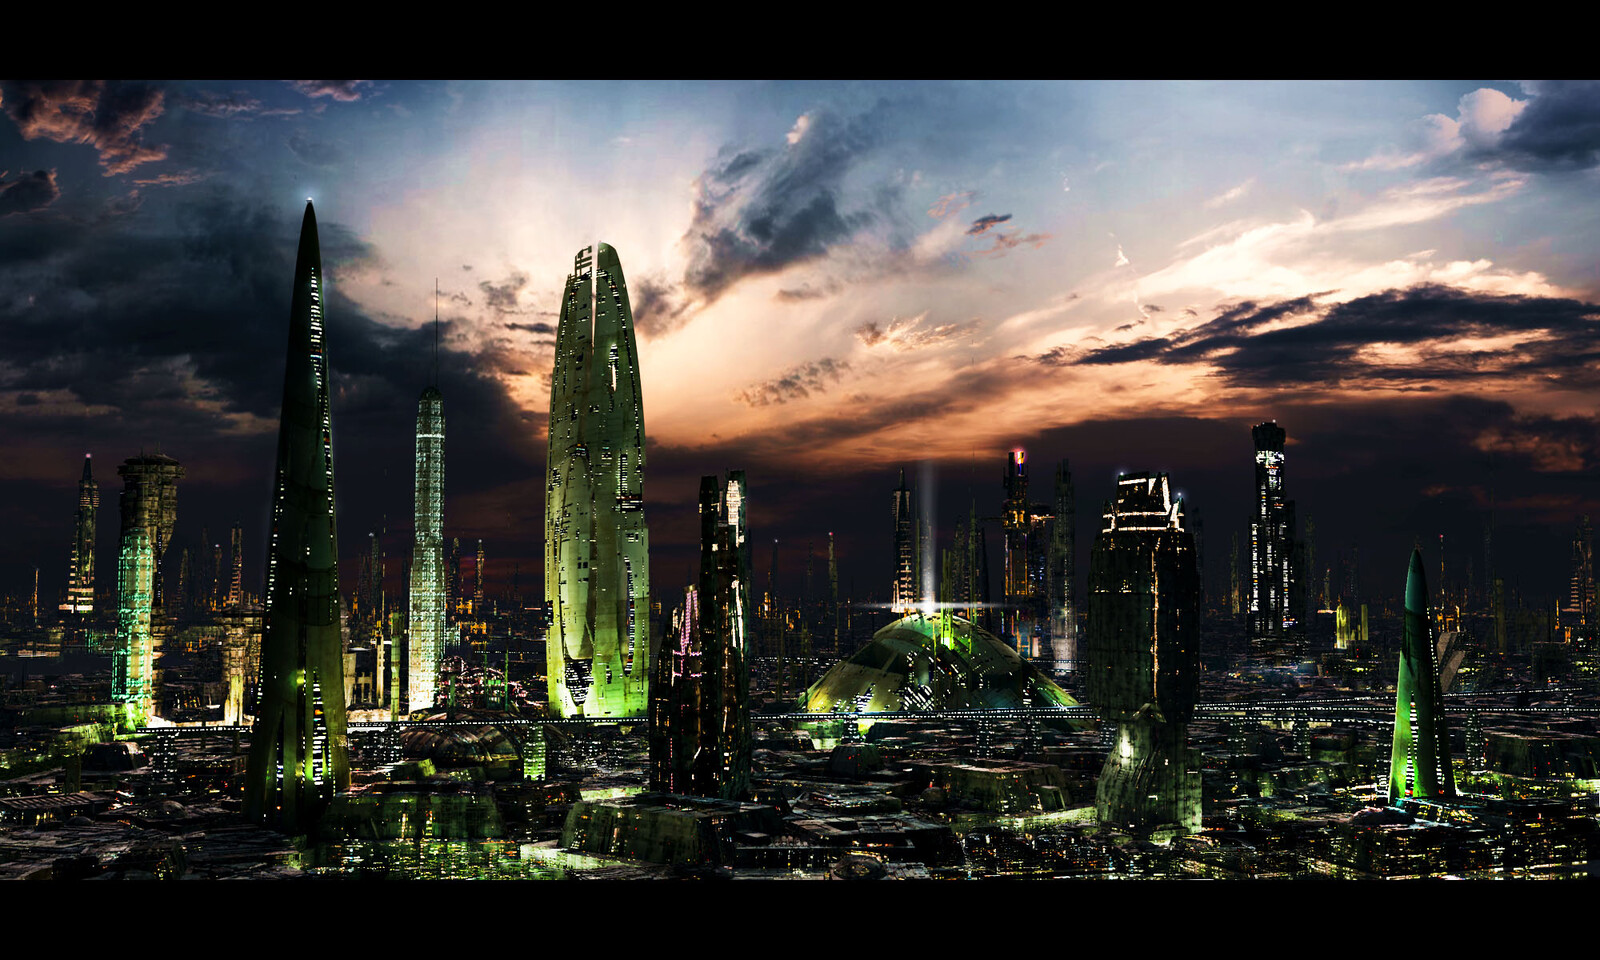 futuristic_city_3_test_by_rich35211-d37li6m.jpg